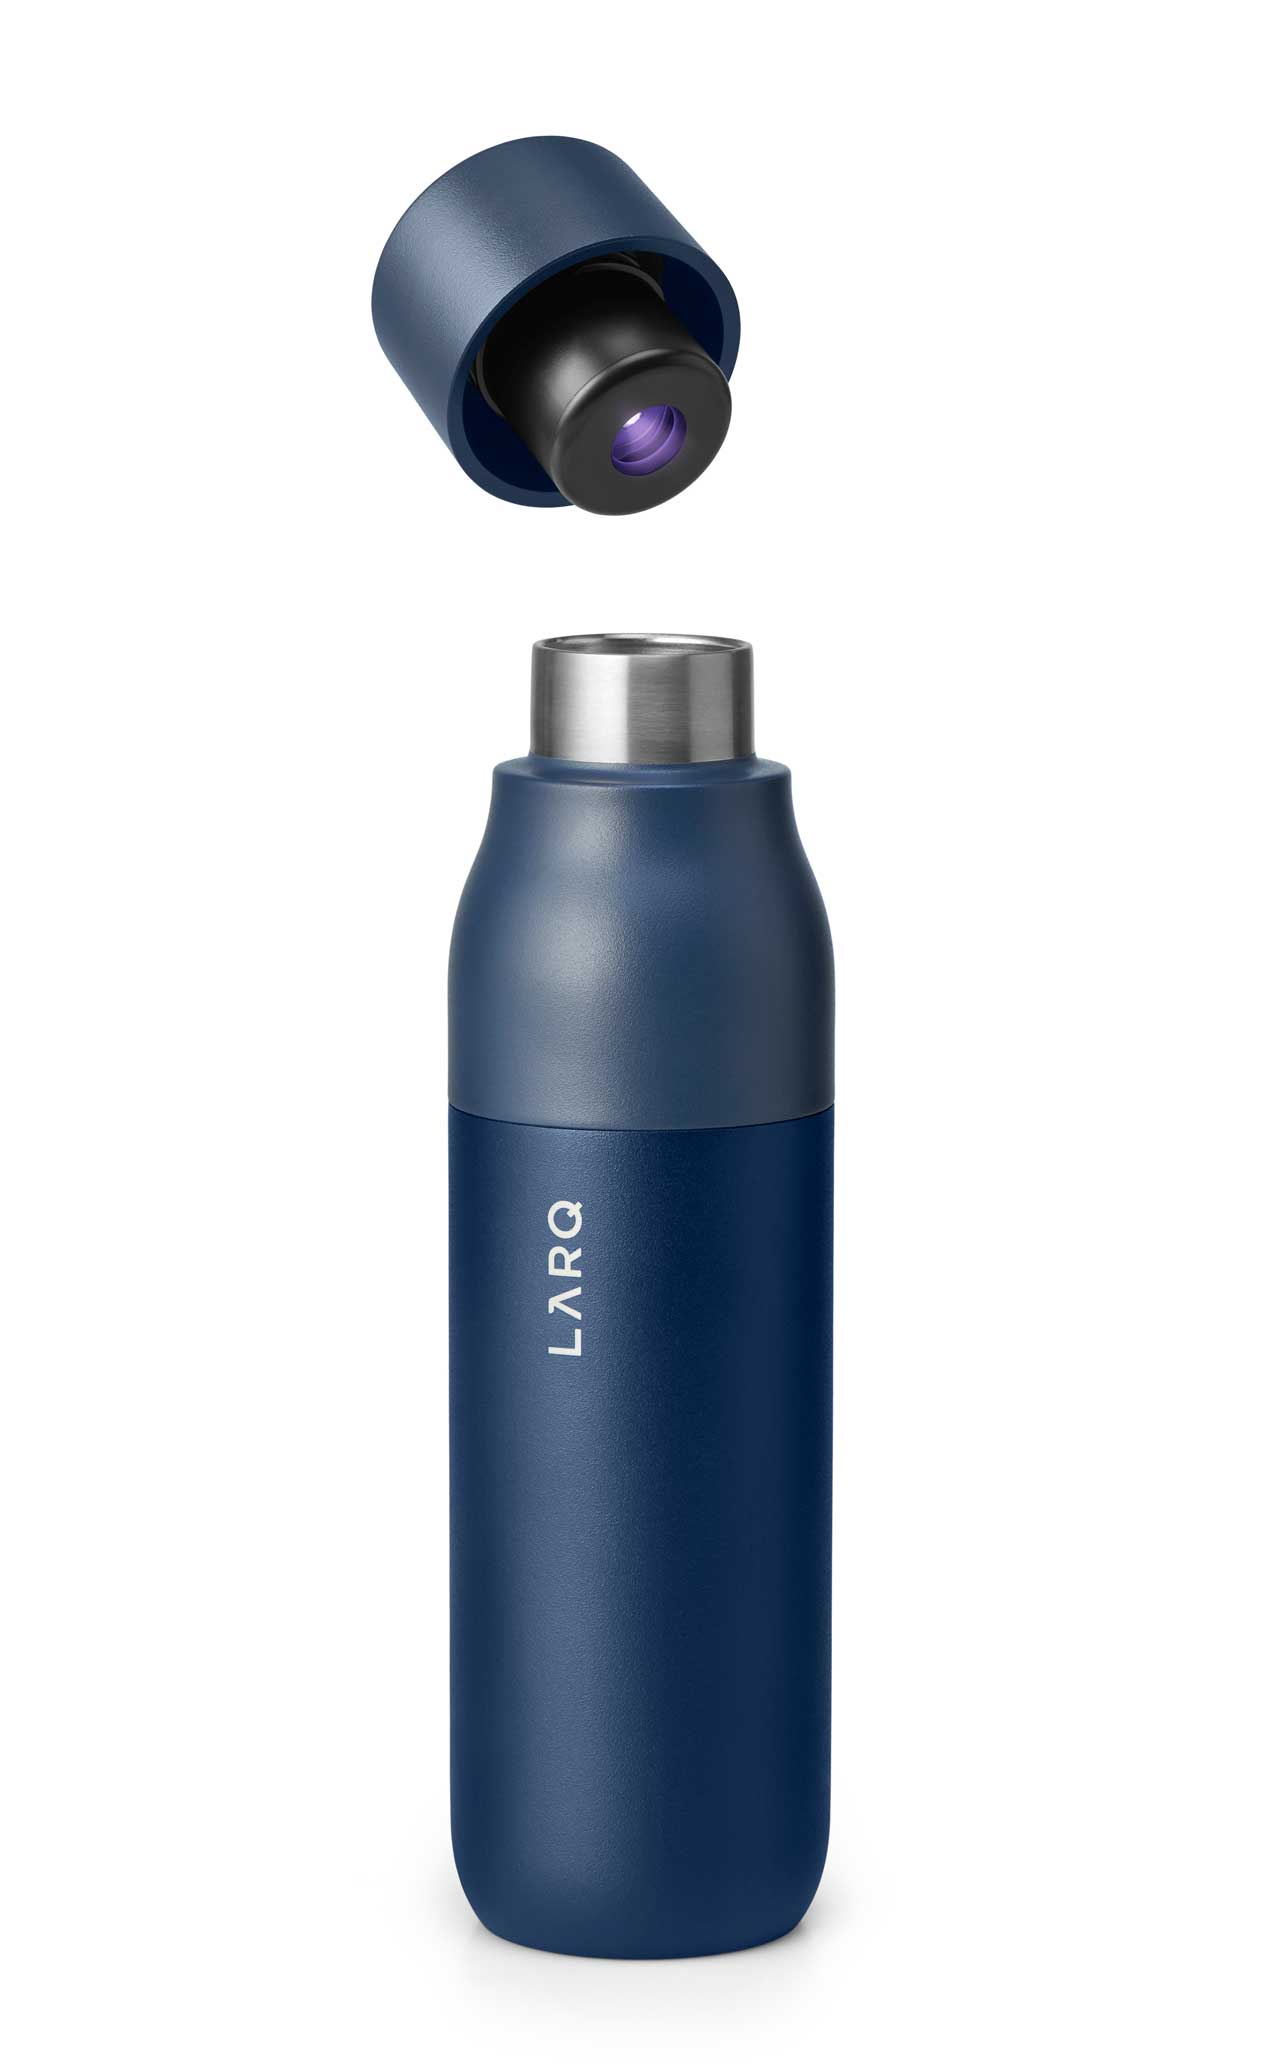 https://design-milk.com/images/2020/05/LARQ-Bottle-self-cleaning-water-bottle-29.jpg